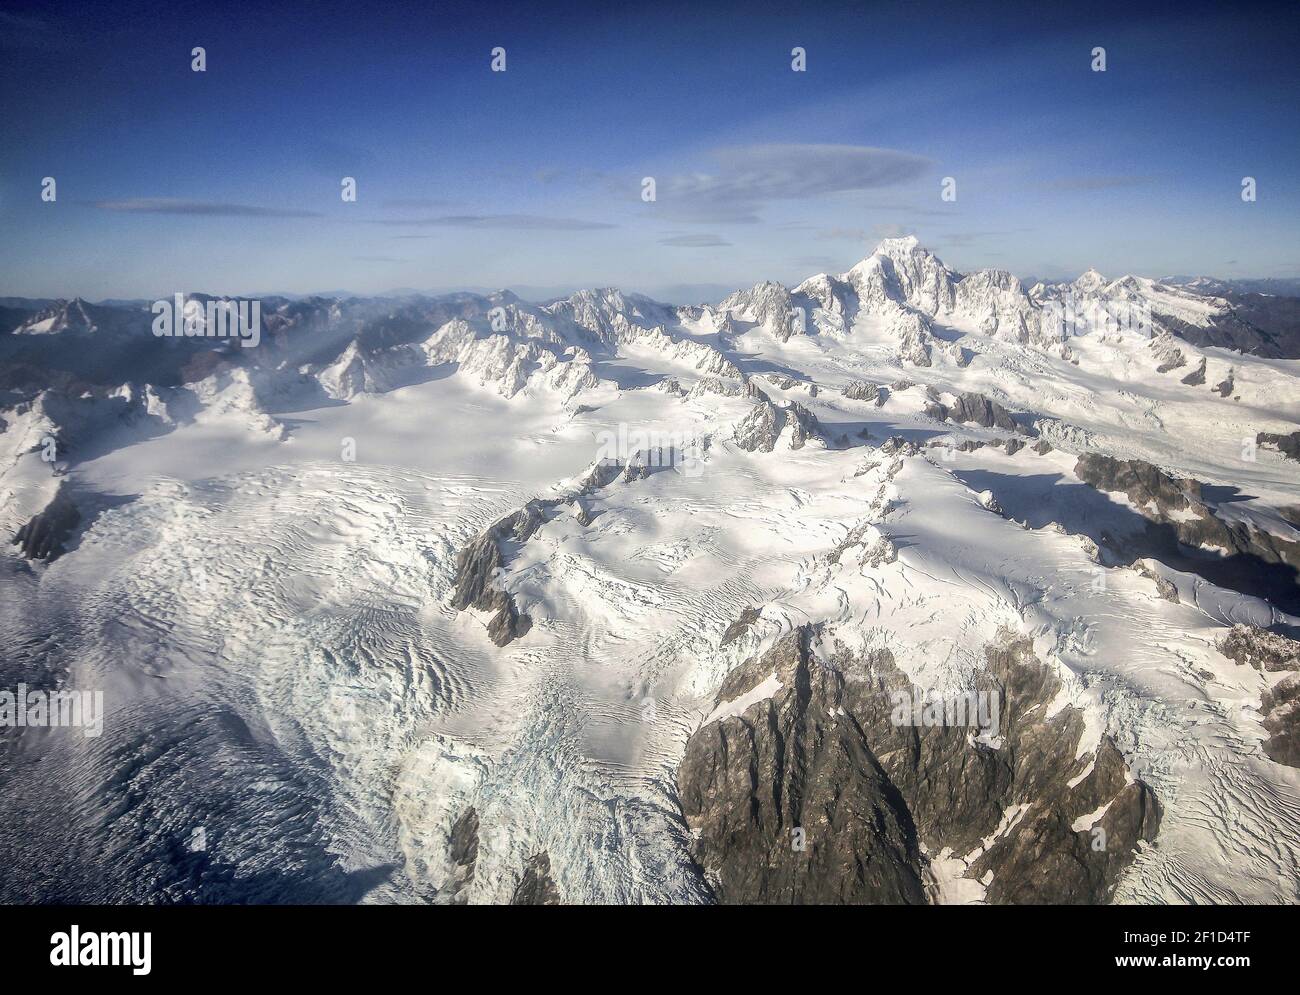 Montañas cubiertas de nieve y hielo, disparos aéreos realizados desde el avión sobre el Monte Cook y el glaciar Franz Josef en la región de la costa oeste de Nueva Zelanda Foto de stock